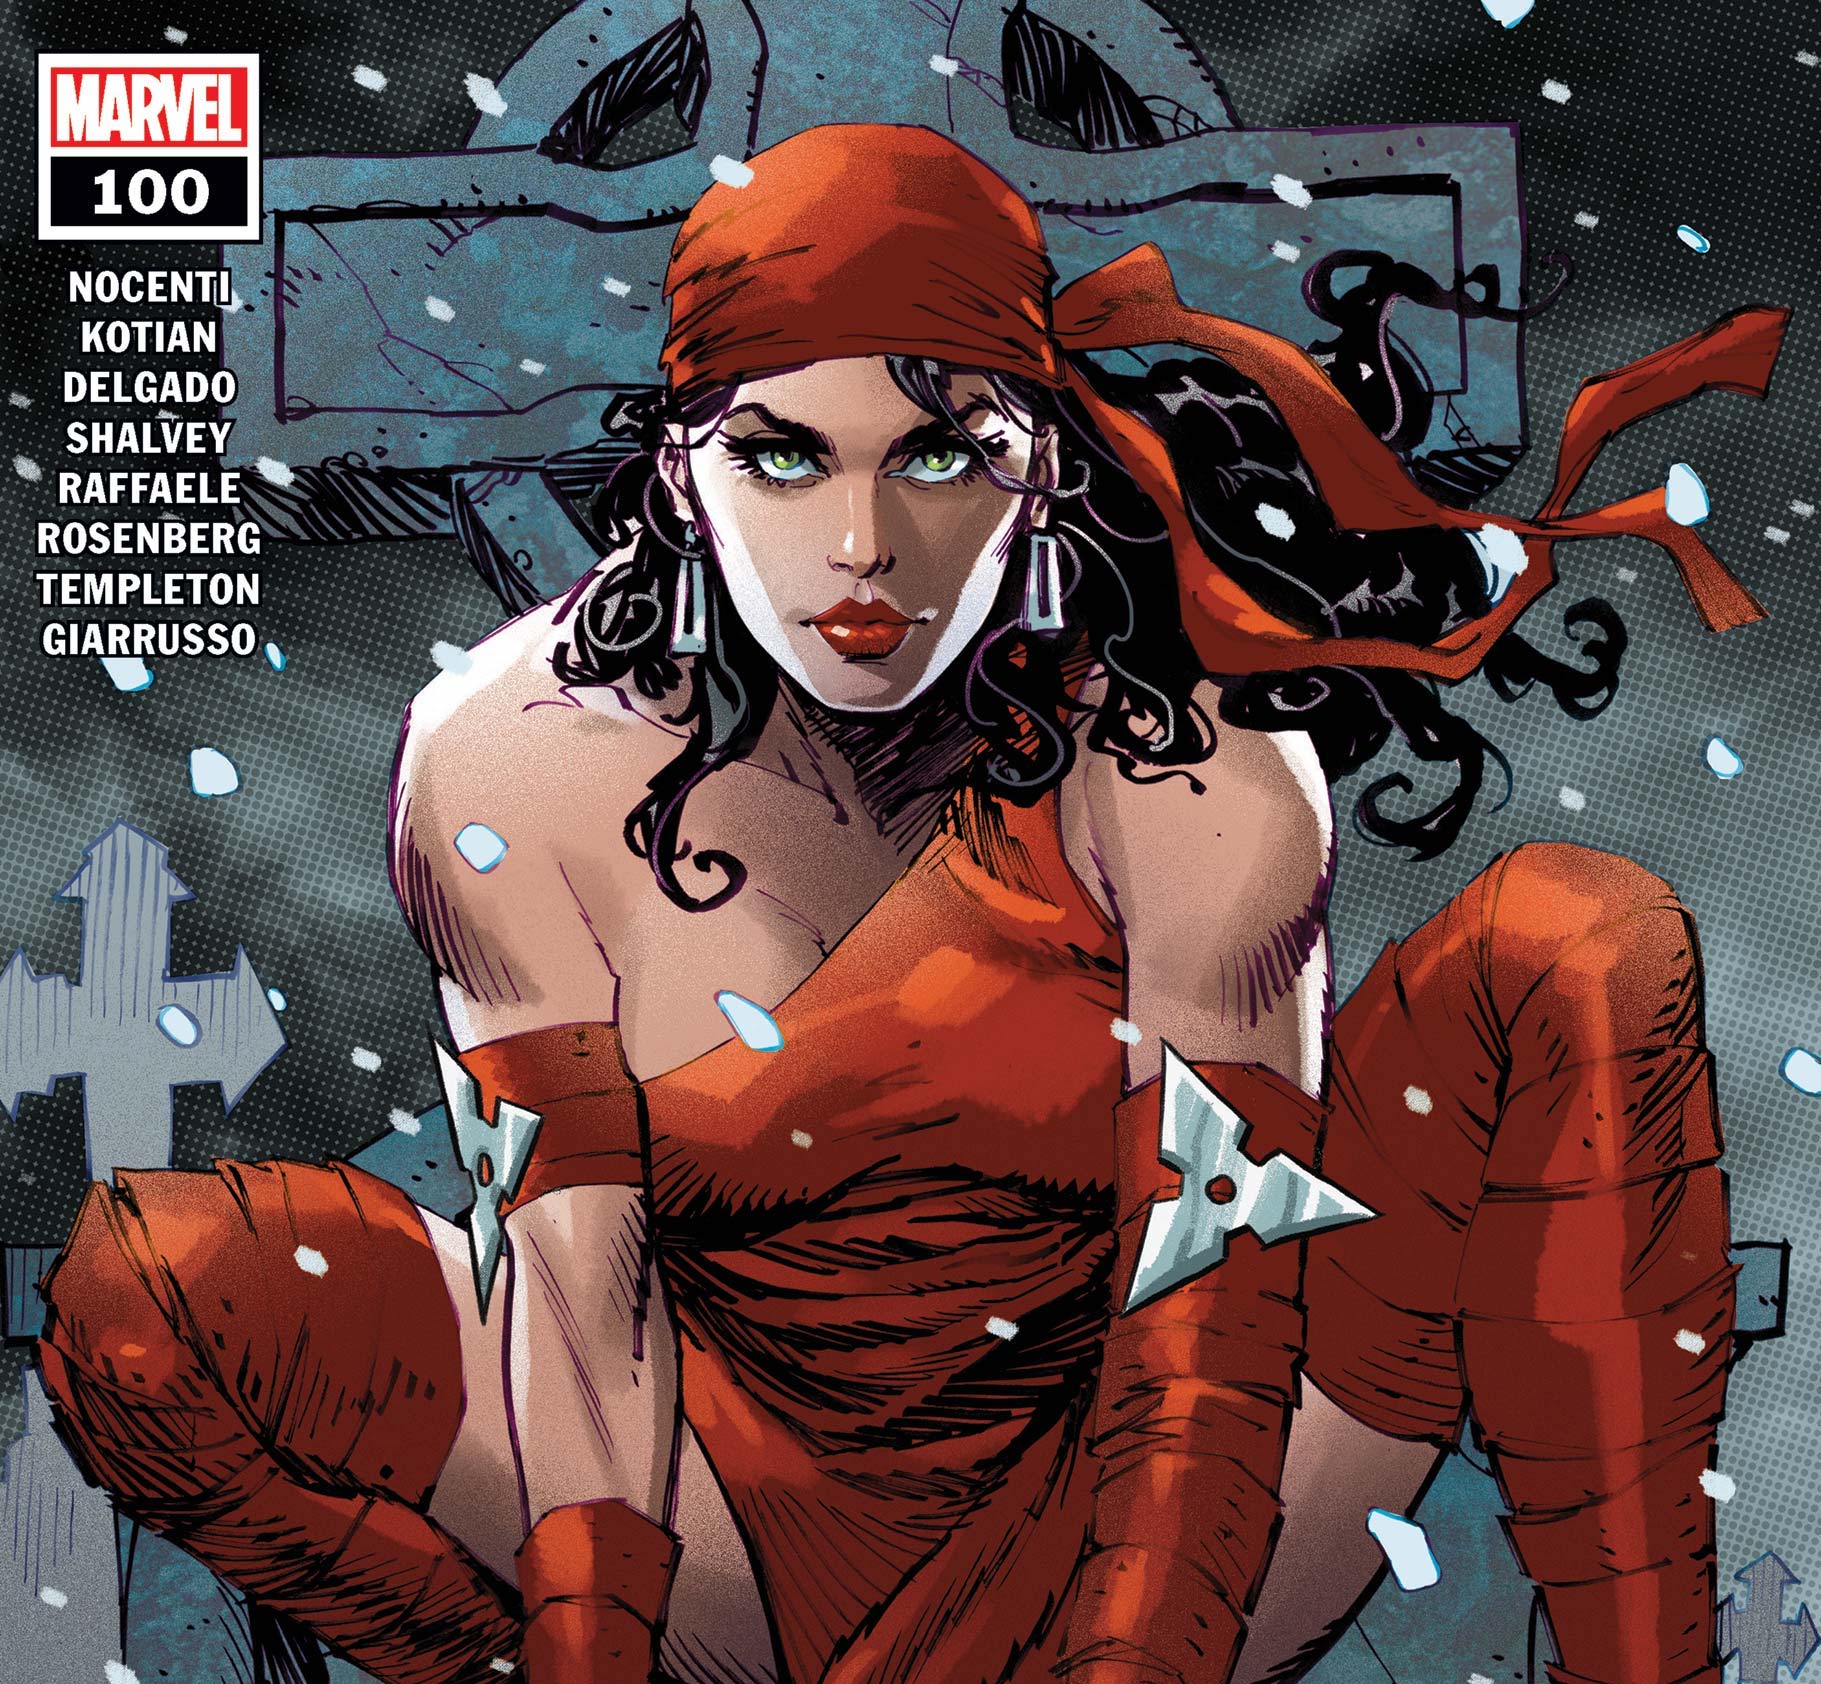 'Elektra' #100 celebrates the tenacity and mystery of Elektra